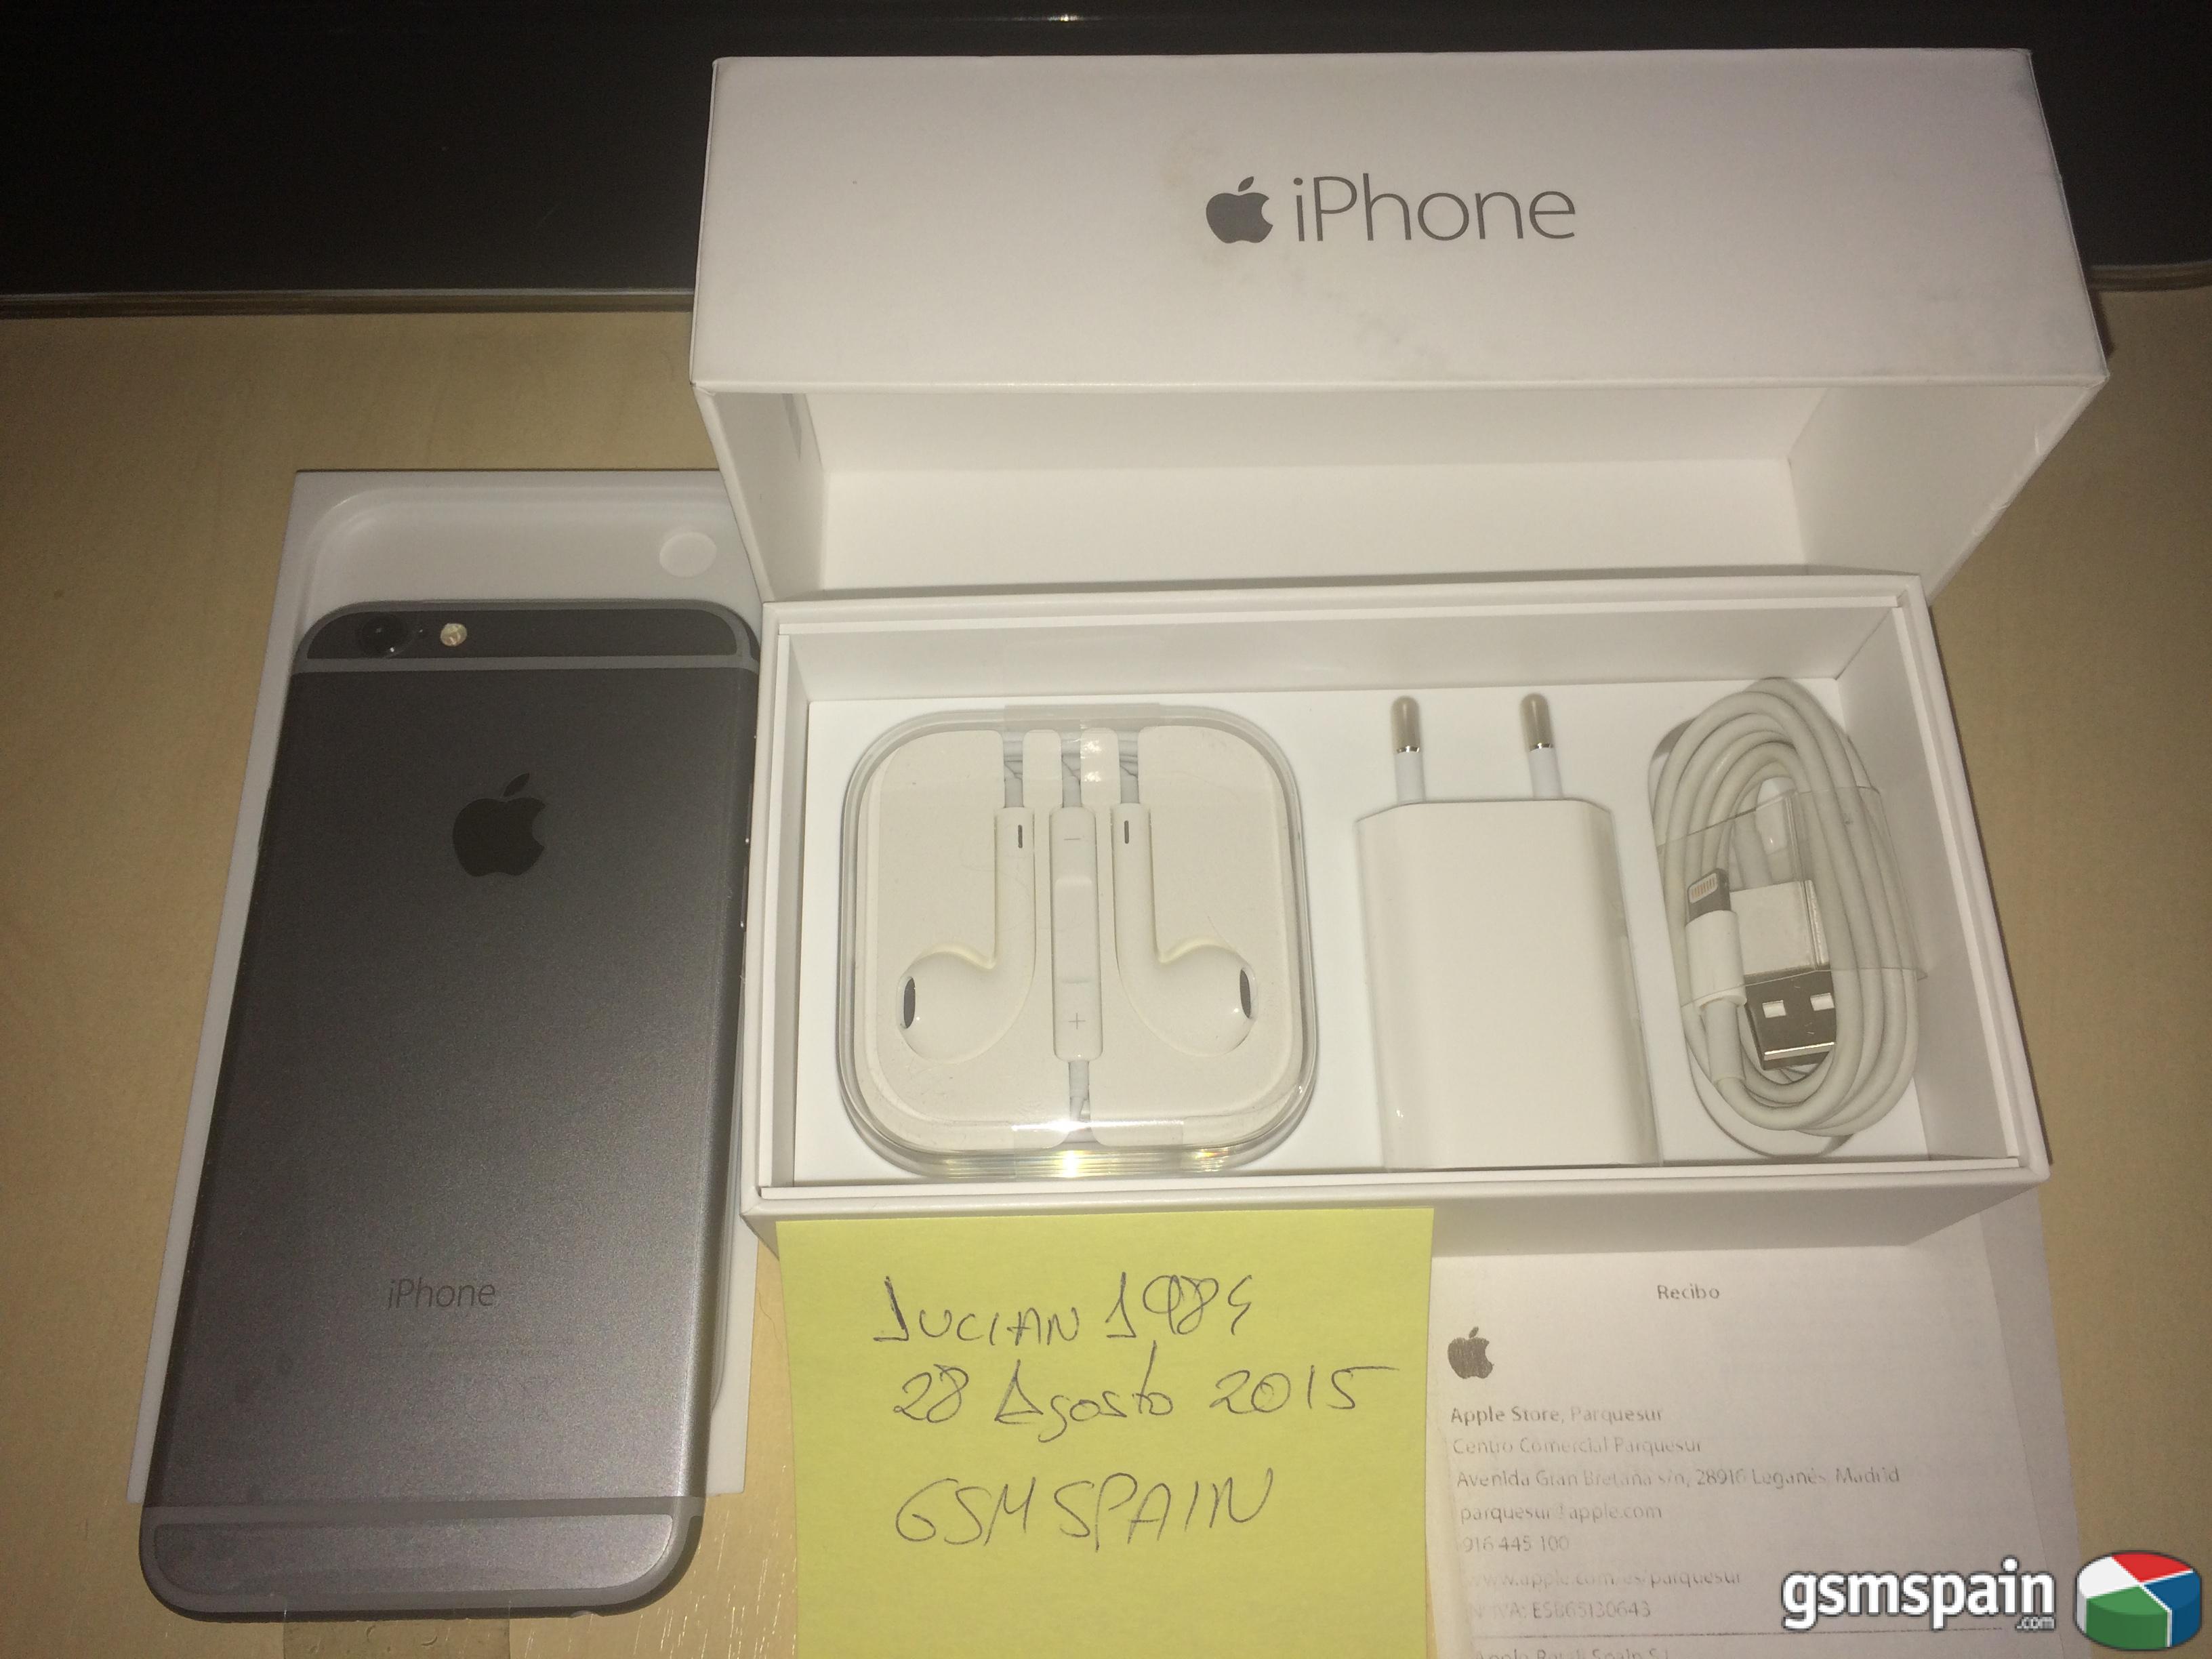 [VENDO] iPhone 6 64Gb Space Grey. Garantia Apple Store.